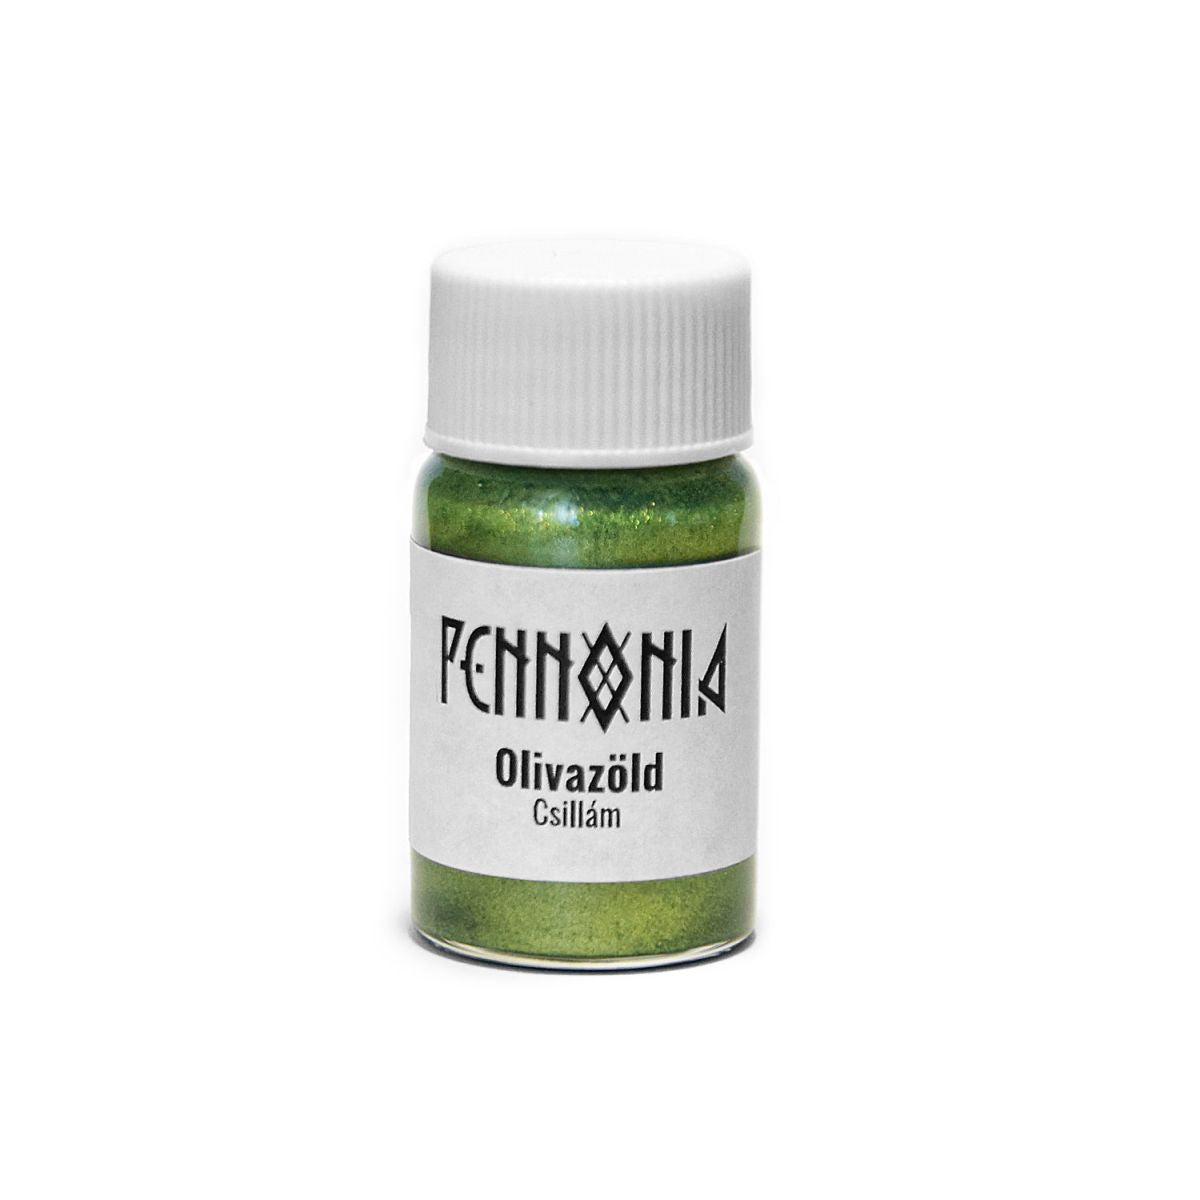 Pennonia shimmer additive - Olivazöld